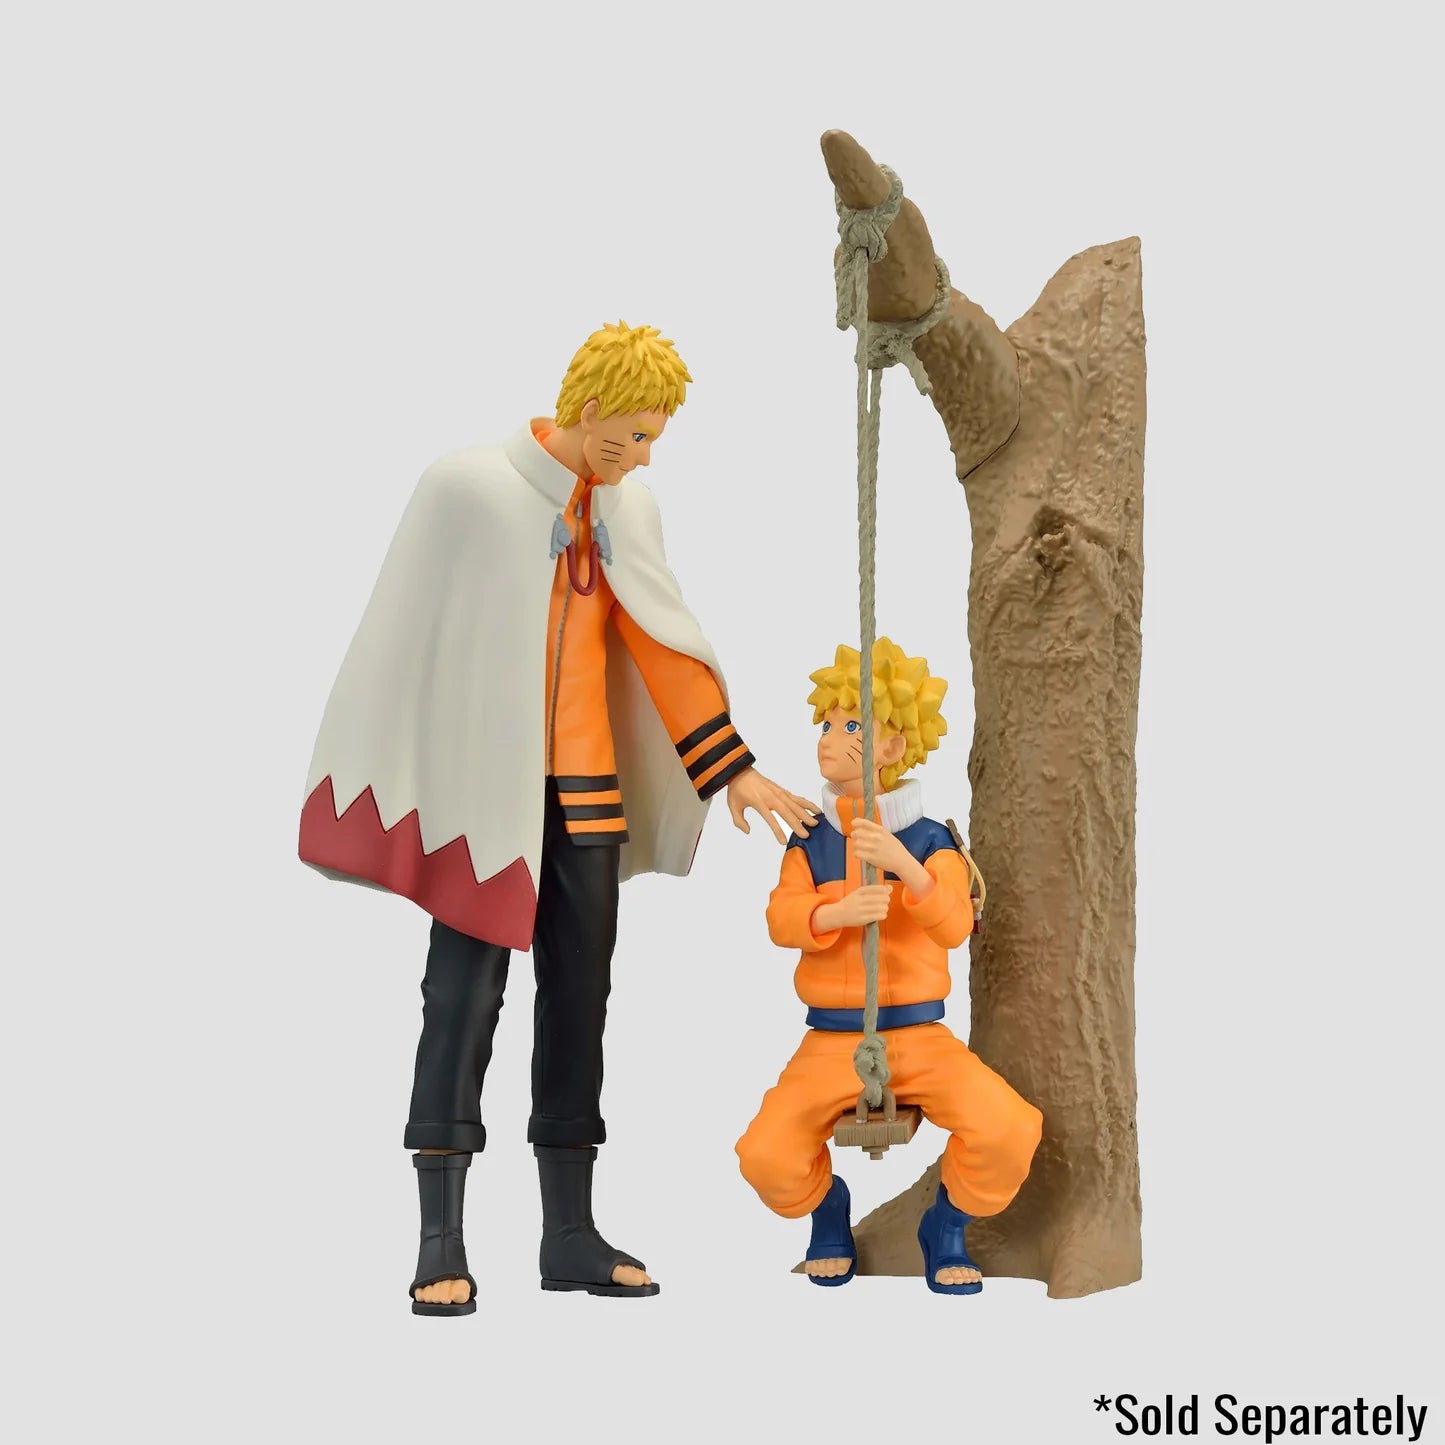 Naruto Uzumaki Naruto Shippuden Animation 20th Anniversary Costume